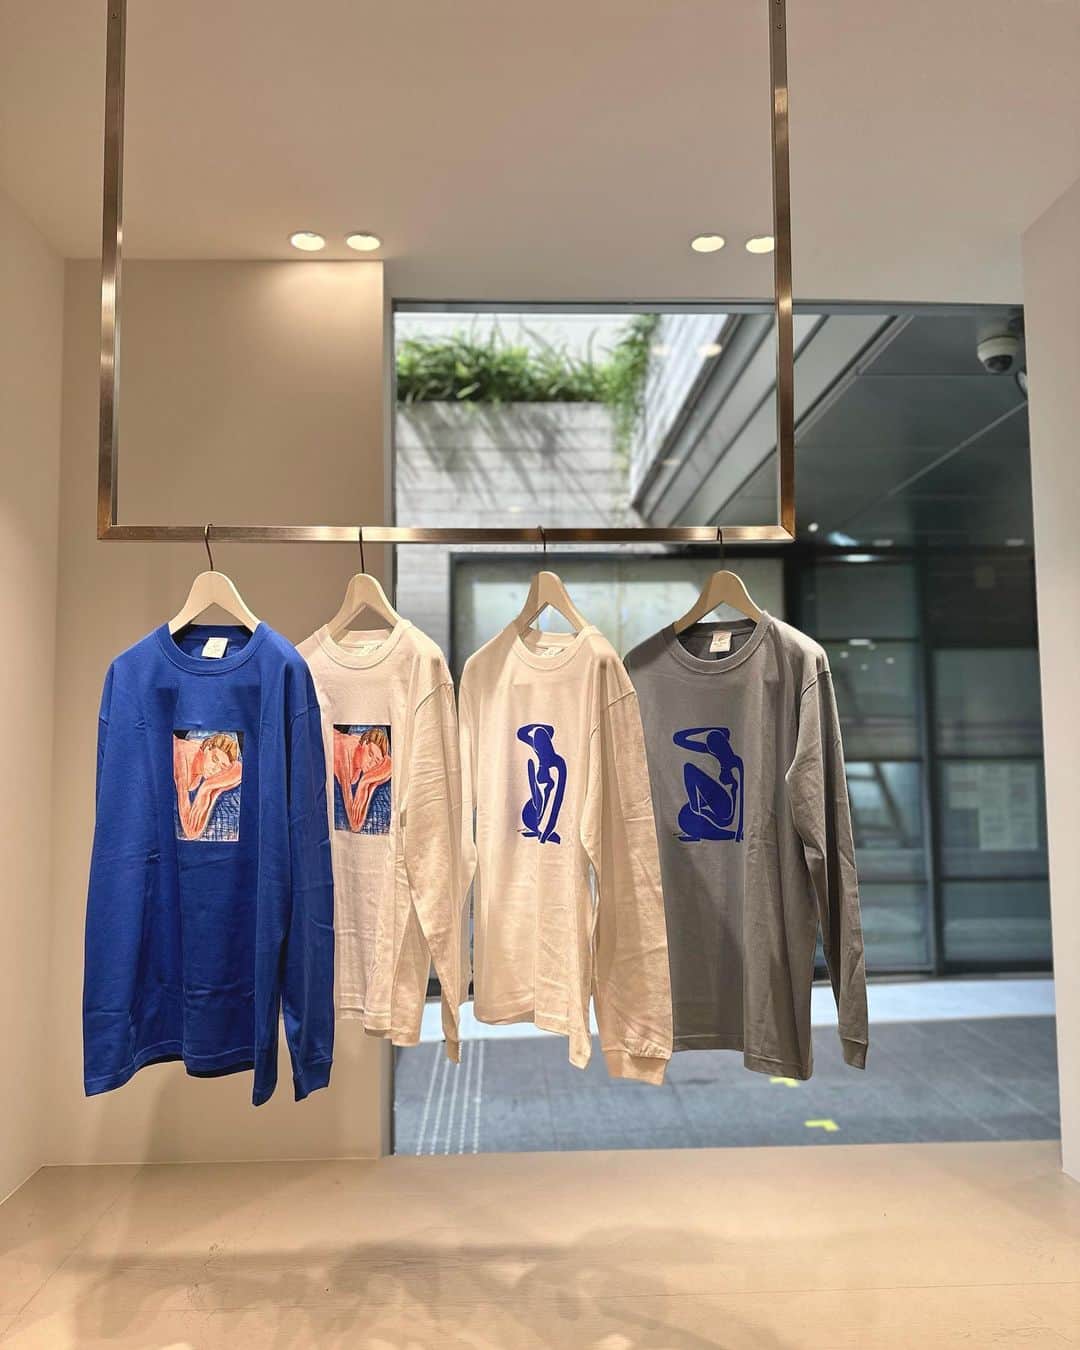 6(ROKU) OFFICIALのインスタグラム：「-  フランスの画家であるHenri Matisse（アンリ・マティス）の作品をプリントしたロングスリーブTシャツ2型を発売しました。   Price:￥13,200 Size:M/L/XL Color:White/LT.Blue(BLUE NUDE) 　　　White/Cobalt(LYDIA)   今回、晩年の代表作である「ブルー・ヌードⅠ」と「夢」をPICK UP。   「ブルー・ヌード」は、女性のヌードをモチーフとして、青と白だけで表現したマティスの切り絵作品の傑作です。4つのバージョンのある「ブルー・ヌード」の中で、1952年に描かれた「ブルー・ヌードⅠ」はマティスが82歳のときに制作された作品。タイトルにちなんでボディのカラーは淡いブルーと白を採用しました。   「夢」は画面を大胆に占める肌色と背景の青色の対比が魅力的な作品。この作品のモデルは、マティスが亡くなるまで傍でその制作を支えた助手のリディアを描いたもの。人物像だけでなく画面全体から、くつろいだ情感が伝わってきます。人物を描く際、画家はモデルを観察し、彼女にぴったりくるポーズに奴隷のように従うのみと生前語ったマティス。 うつぶせで組んだ腕の上に顔を埋める女性像は、以降も繰り返し描かれました。   アートとファッションの融合を楽しんでいただきたいコレクションピースです。   -Henri Matisse- アンリ・マティスは、フランスの画家。フォーヴィスムのリーダー的存在であり、野獣派の活動が短期間で終わった後も20世紀を代表する芸術家の一人として活動を続けた。自然をこよなく愛し「色彩の魔術師」と謳われ、緑あふれる世界を描き続けた画家であった。彫刻および版画も手がけている。」